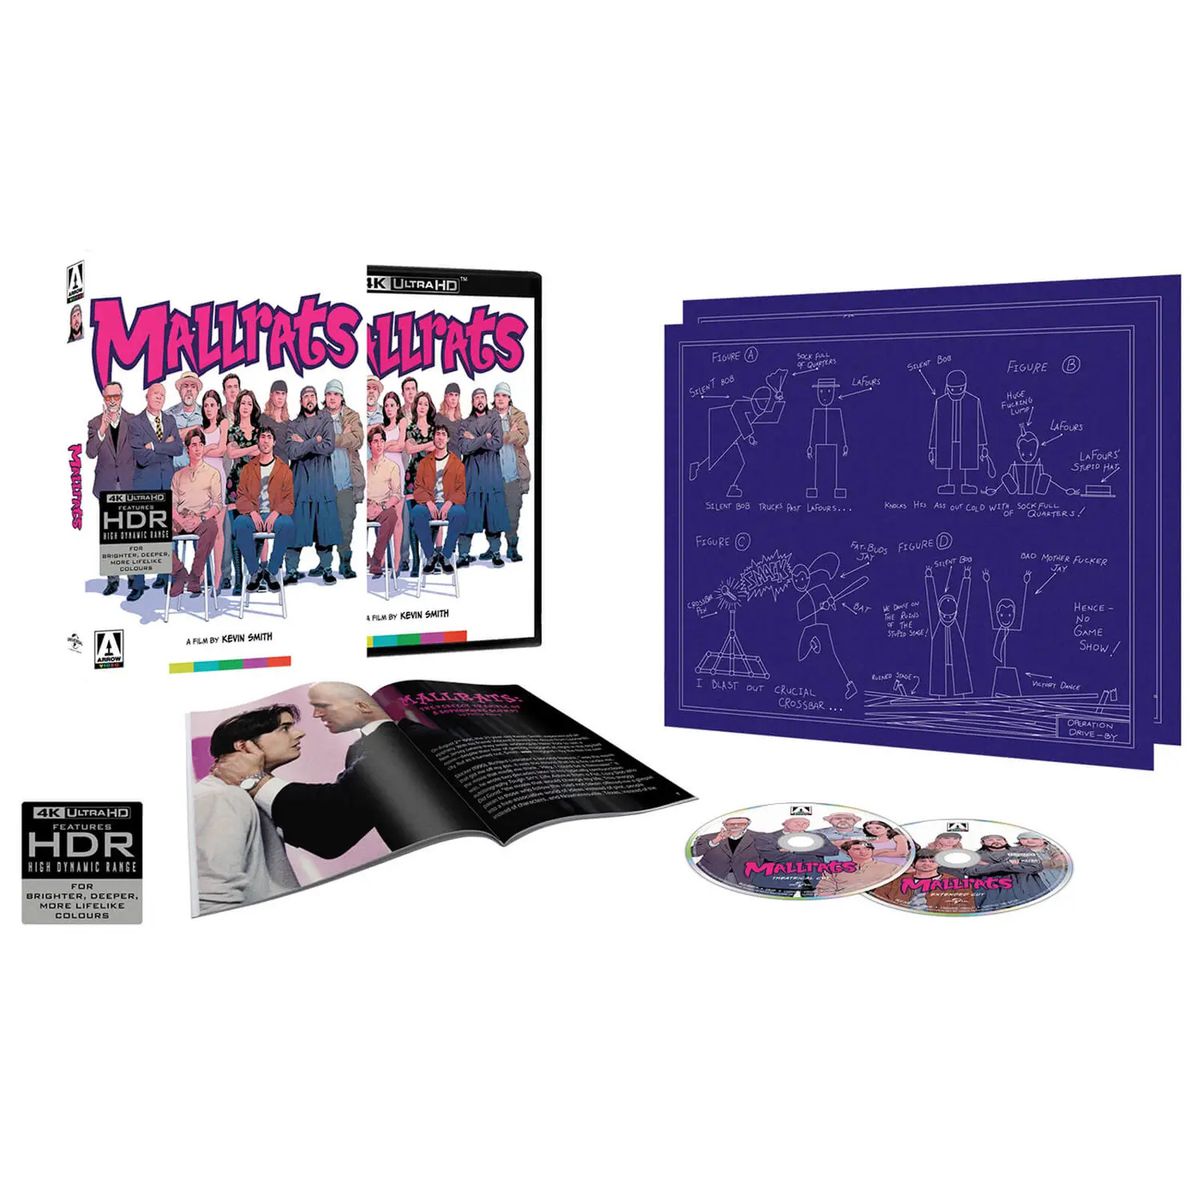 Phiên bản đặc biệt của video Mallrats from Arrow bao gồm nhiều đĩa Blu-ray, một tập sách nhỏ và sơ đồ của Jay và Silent Bob.